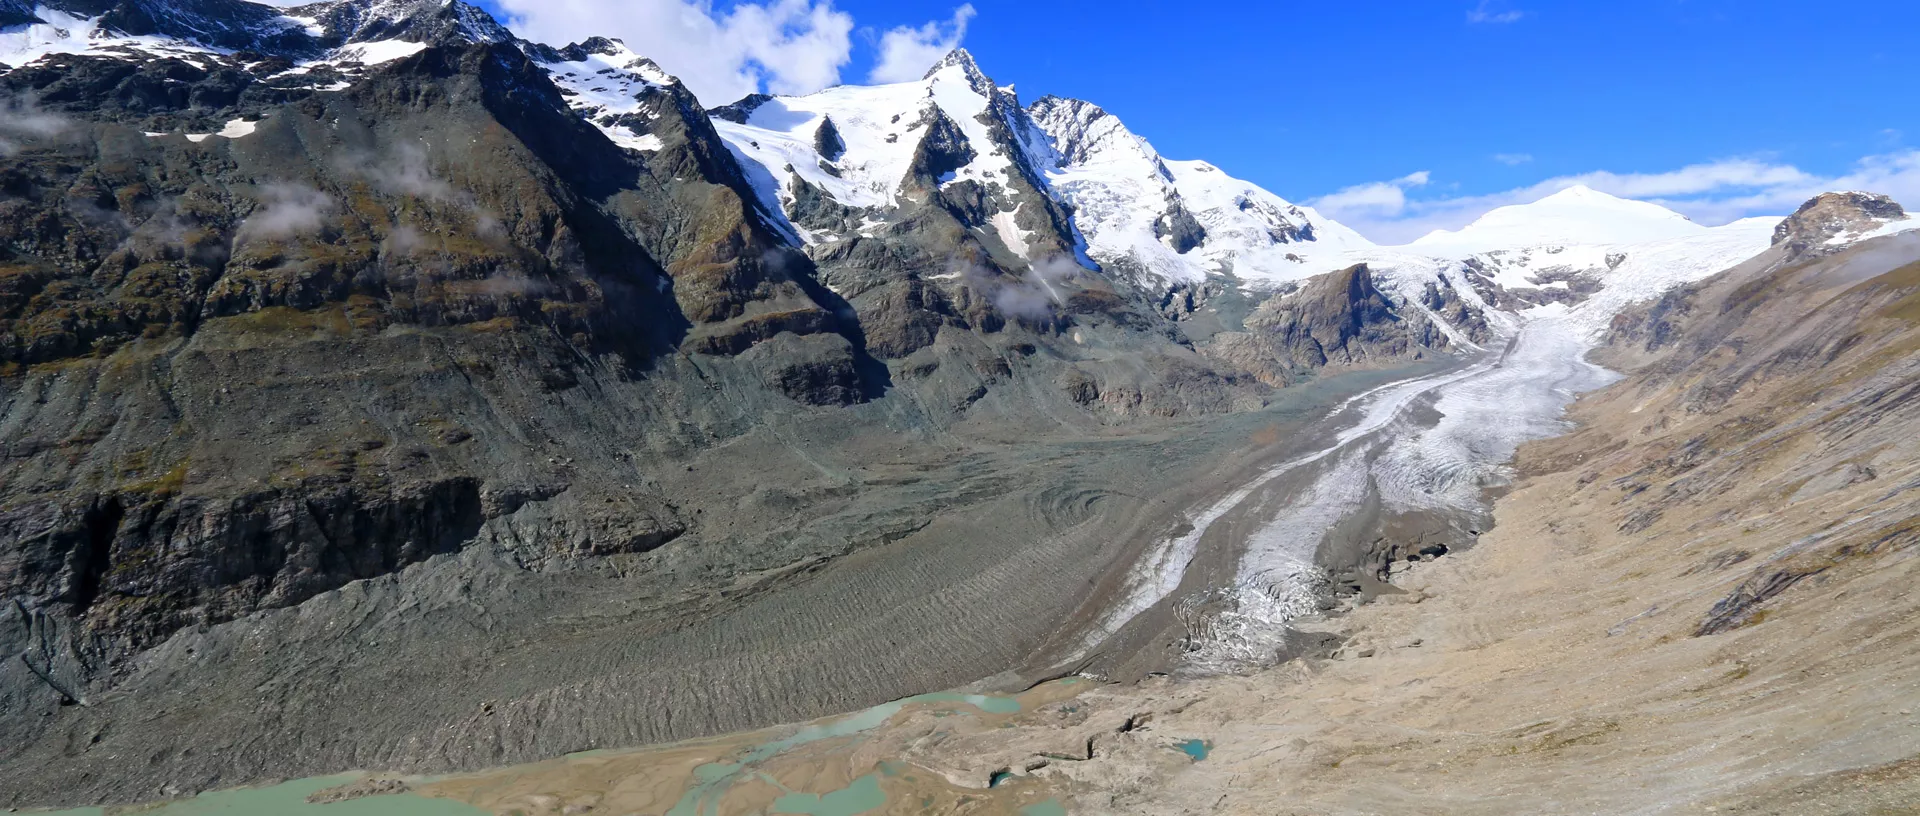 Eine Gletscherzunge vor einem fast schneefreien Gletscher.